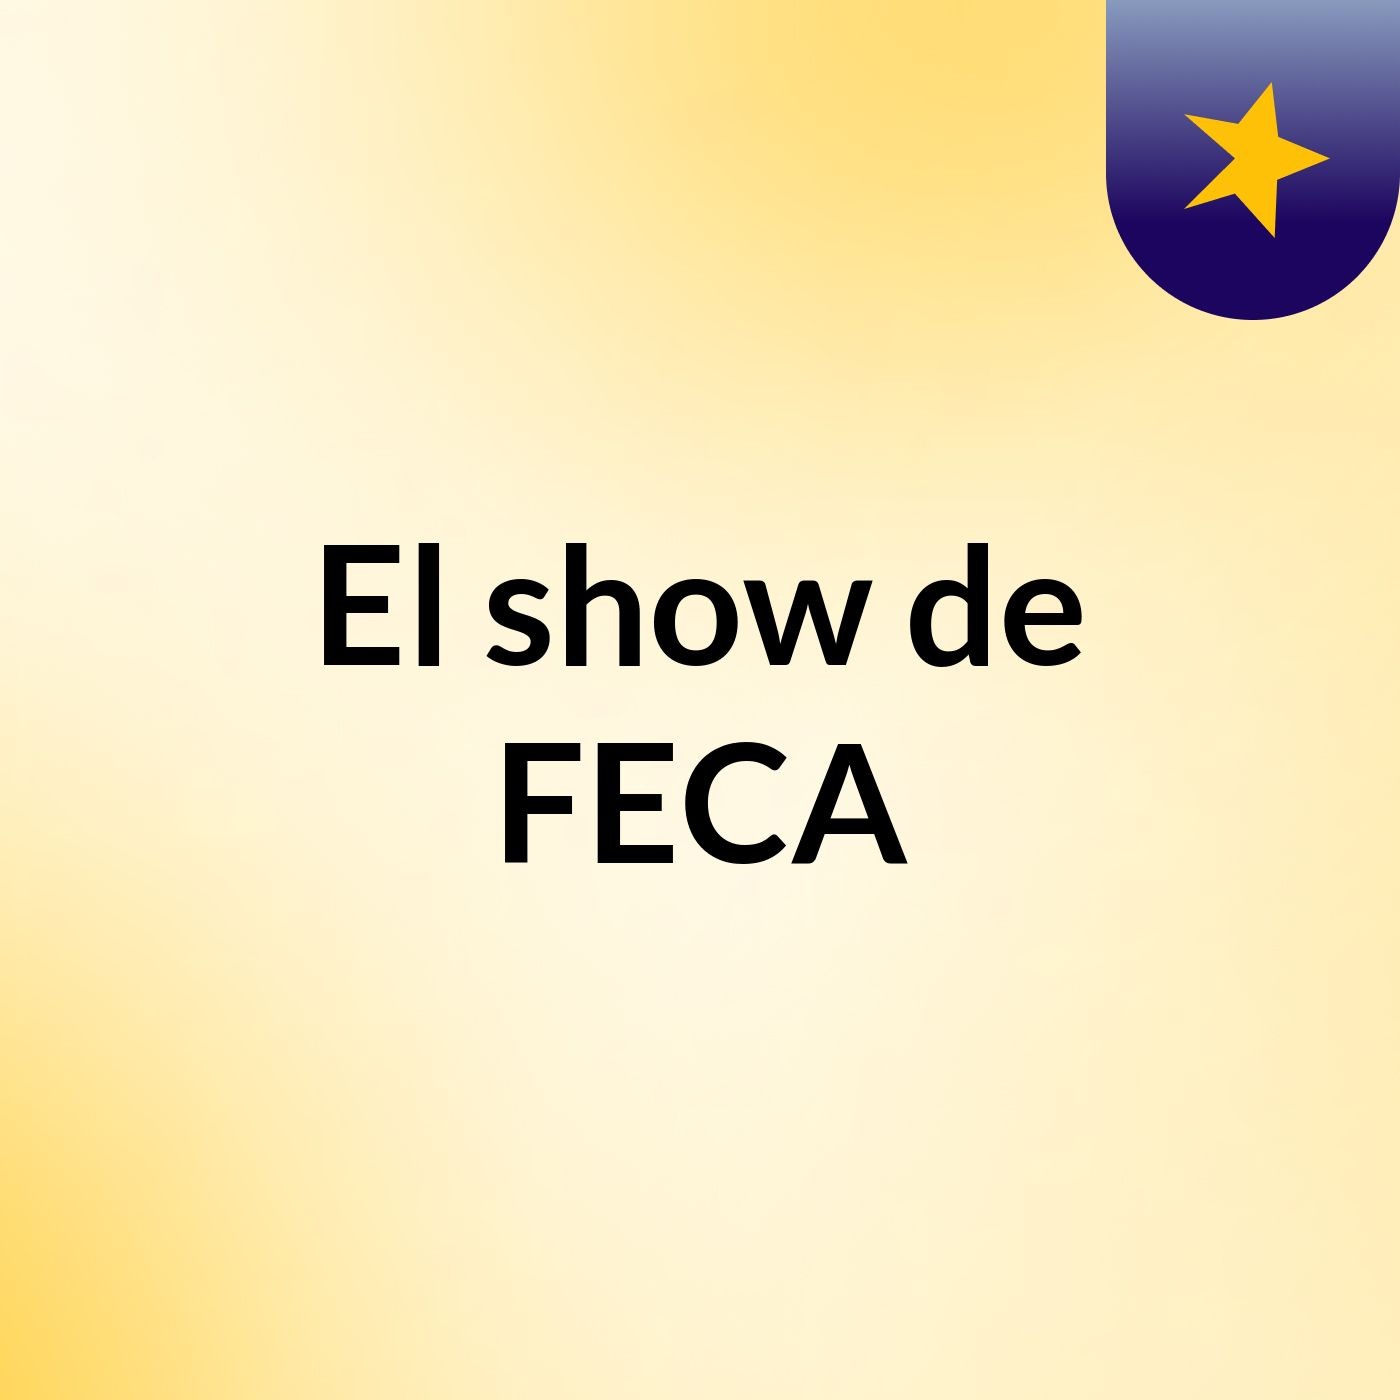 El show de FECA